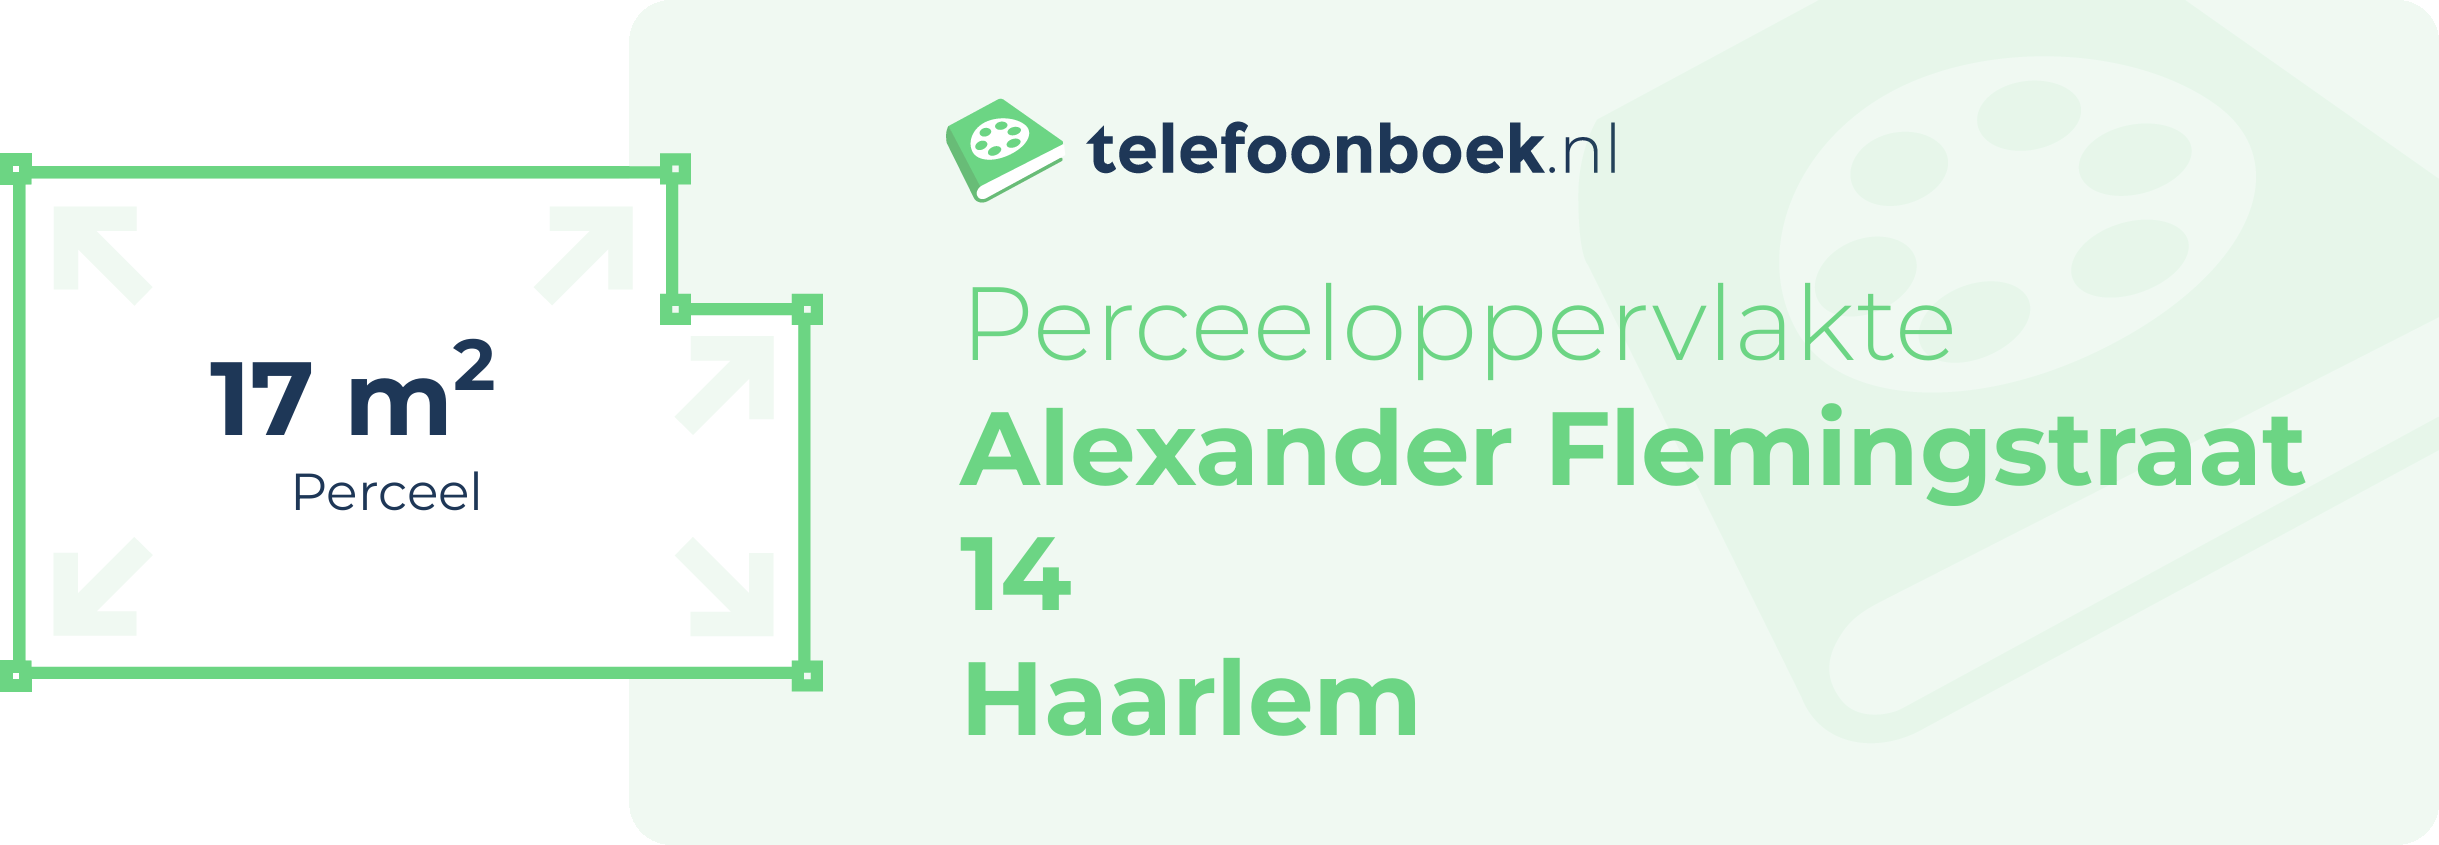 Perceeloppervlakte Alexander Flemingstraat 14 Haarlem